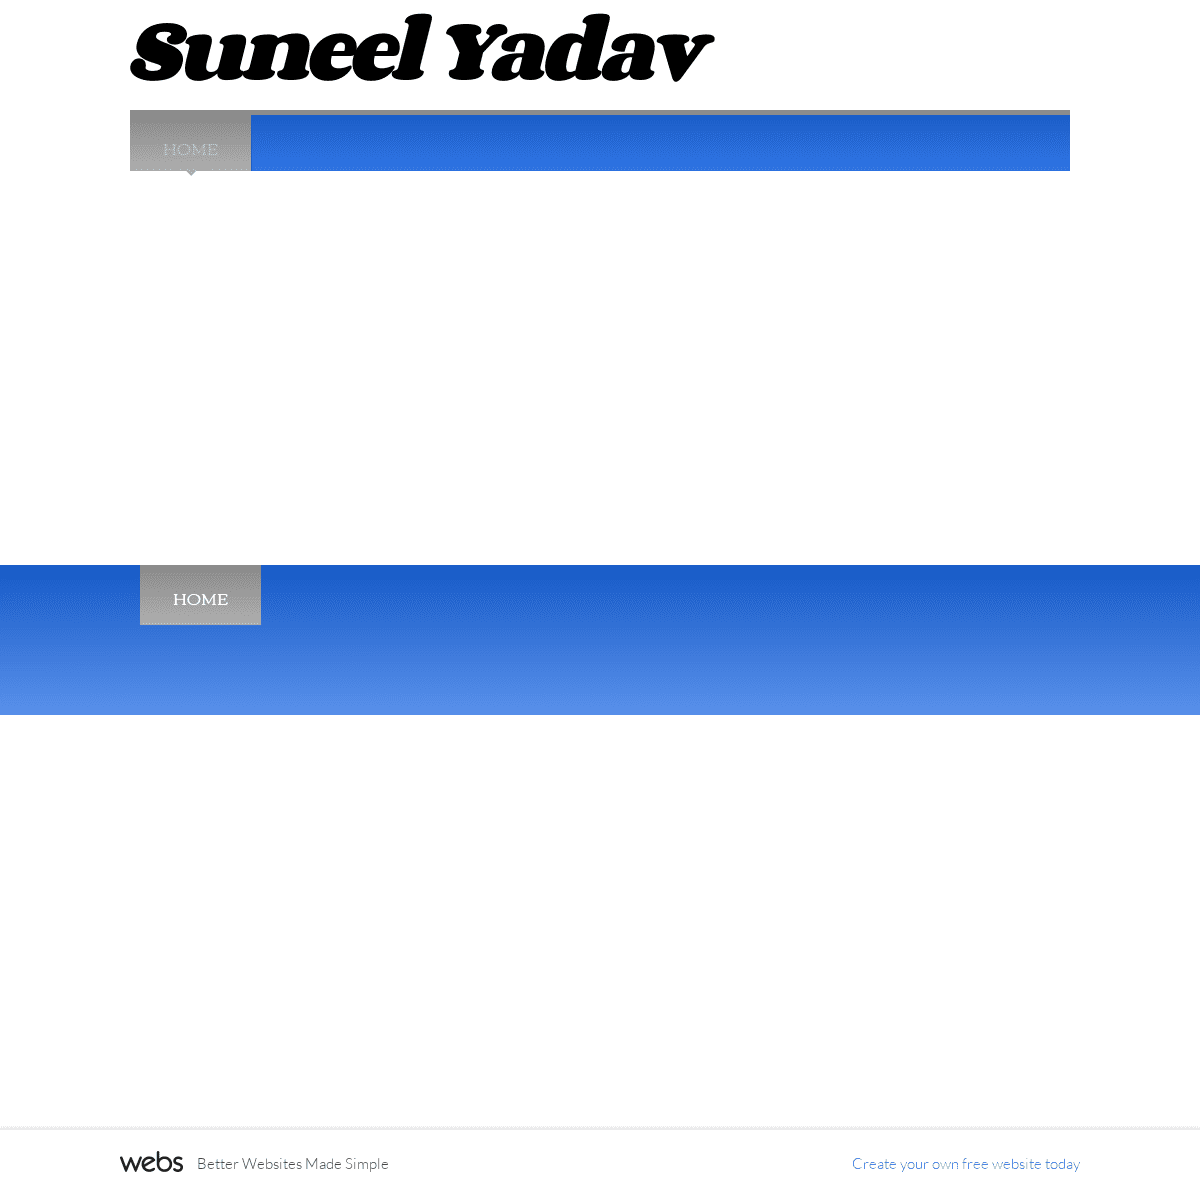 A complete backup of suneel31.webs.com